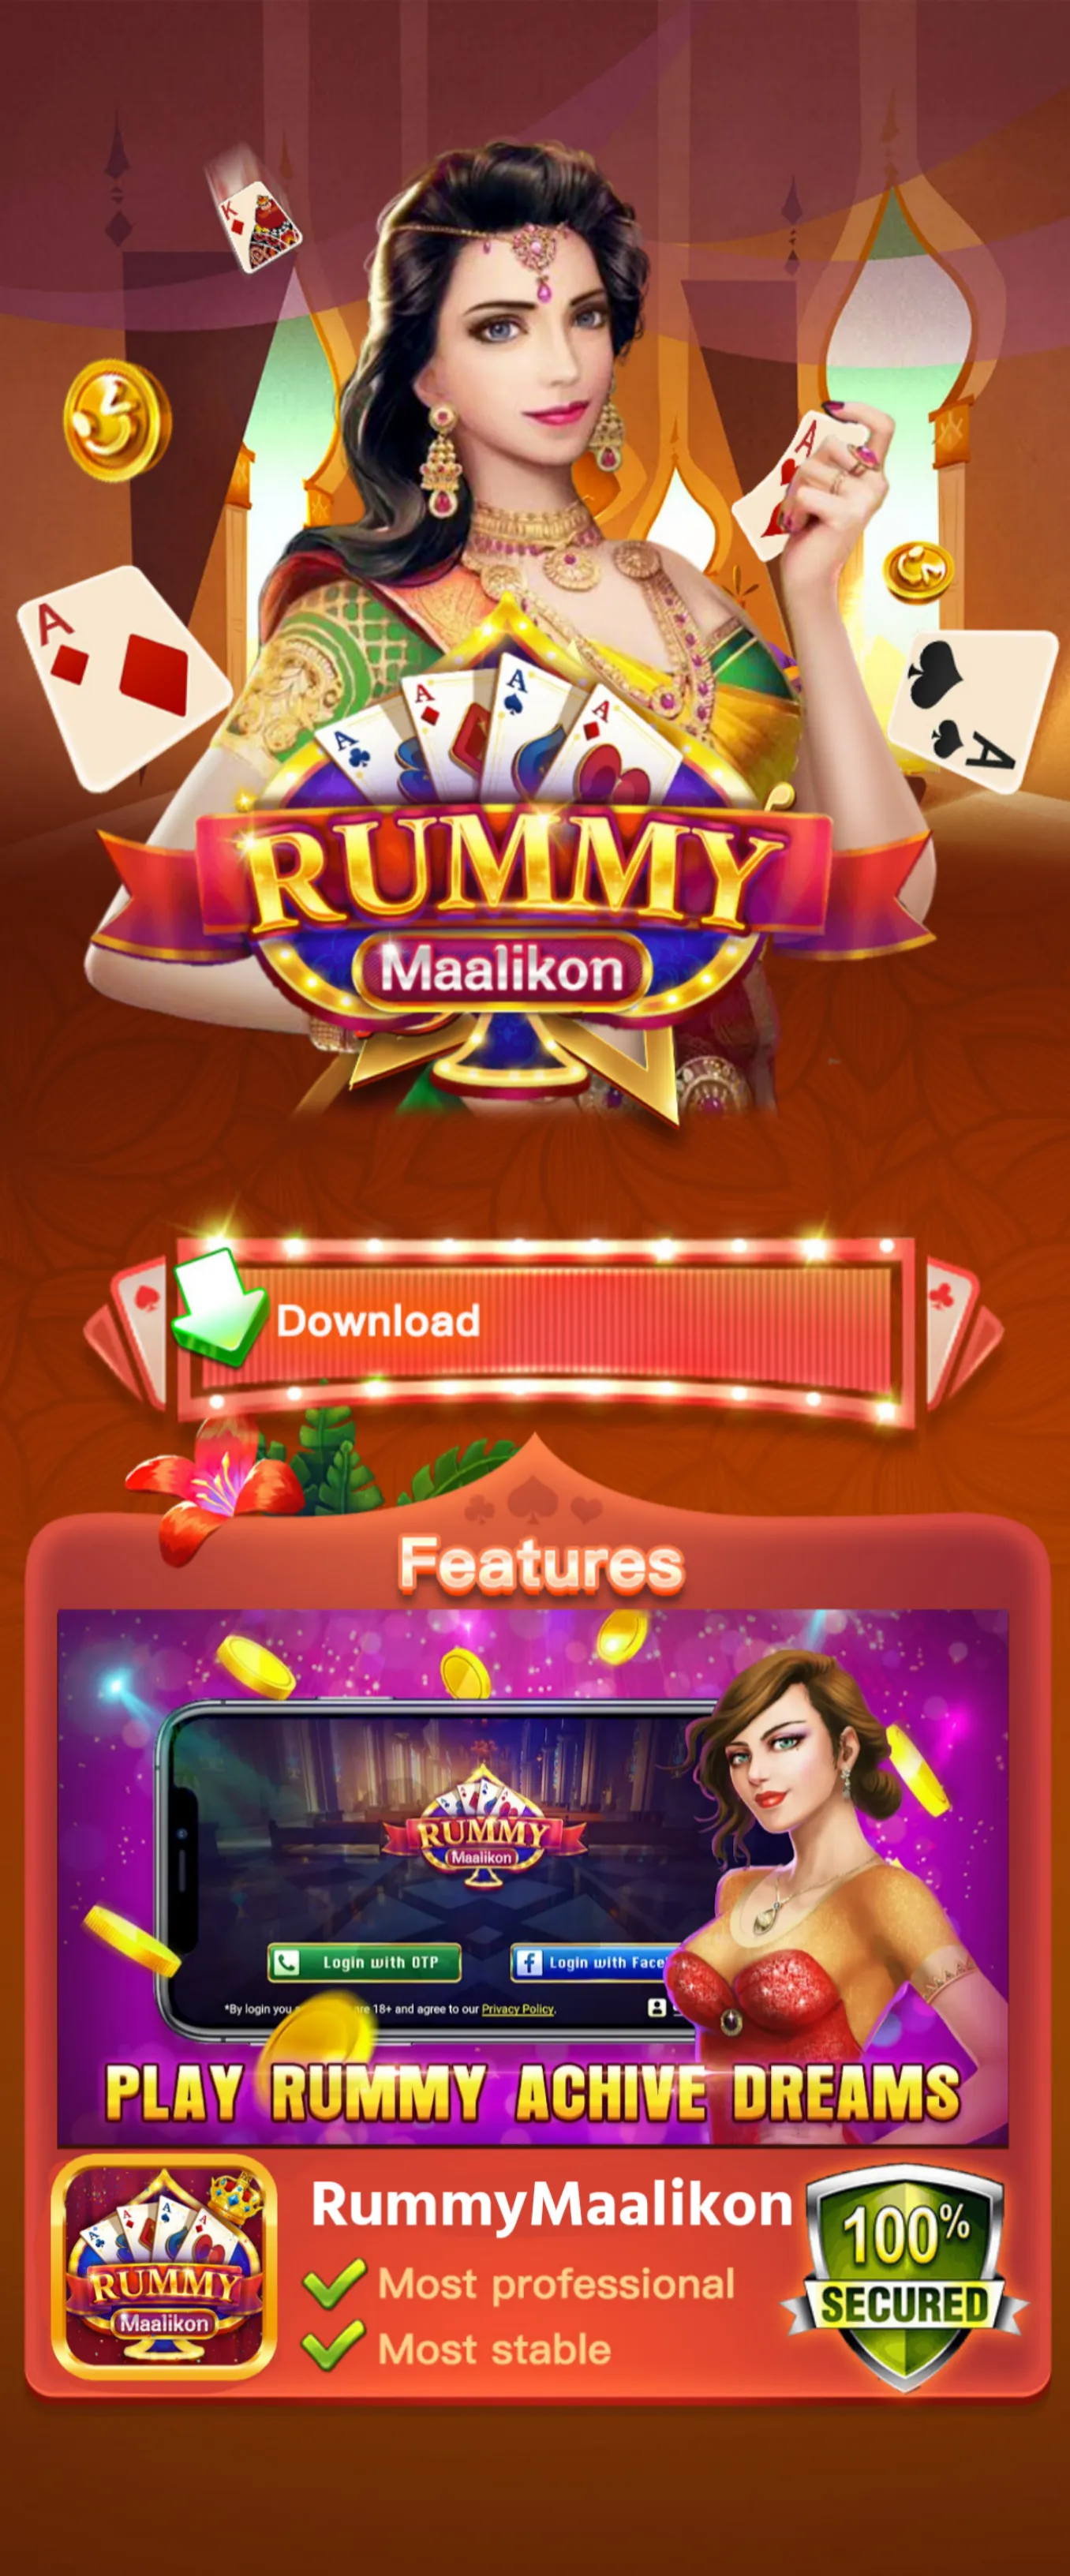 Rummy Maalikon App Top Rummy App